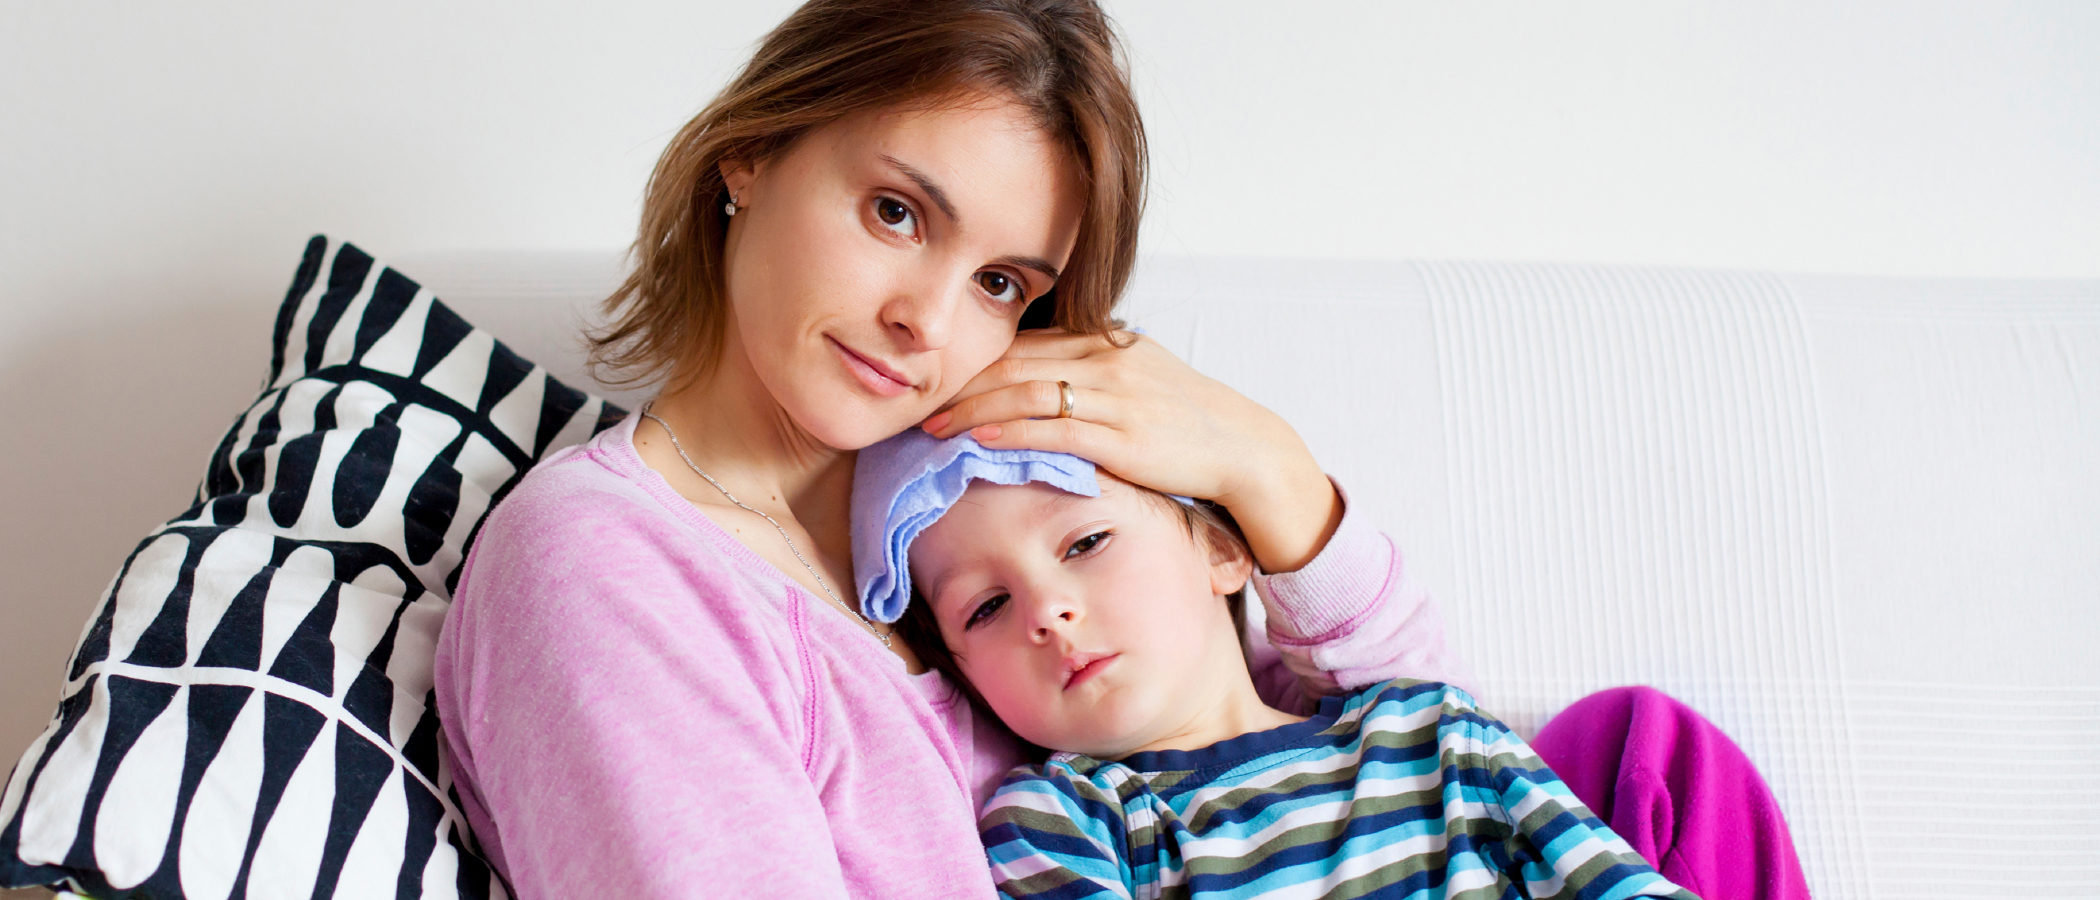 Síntomas y tratamiento de la faringitis en niños